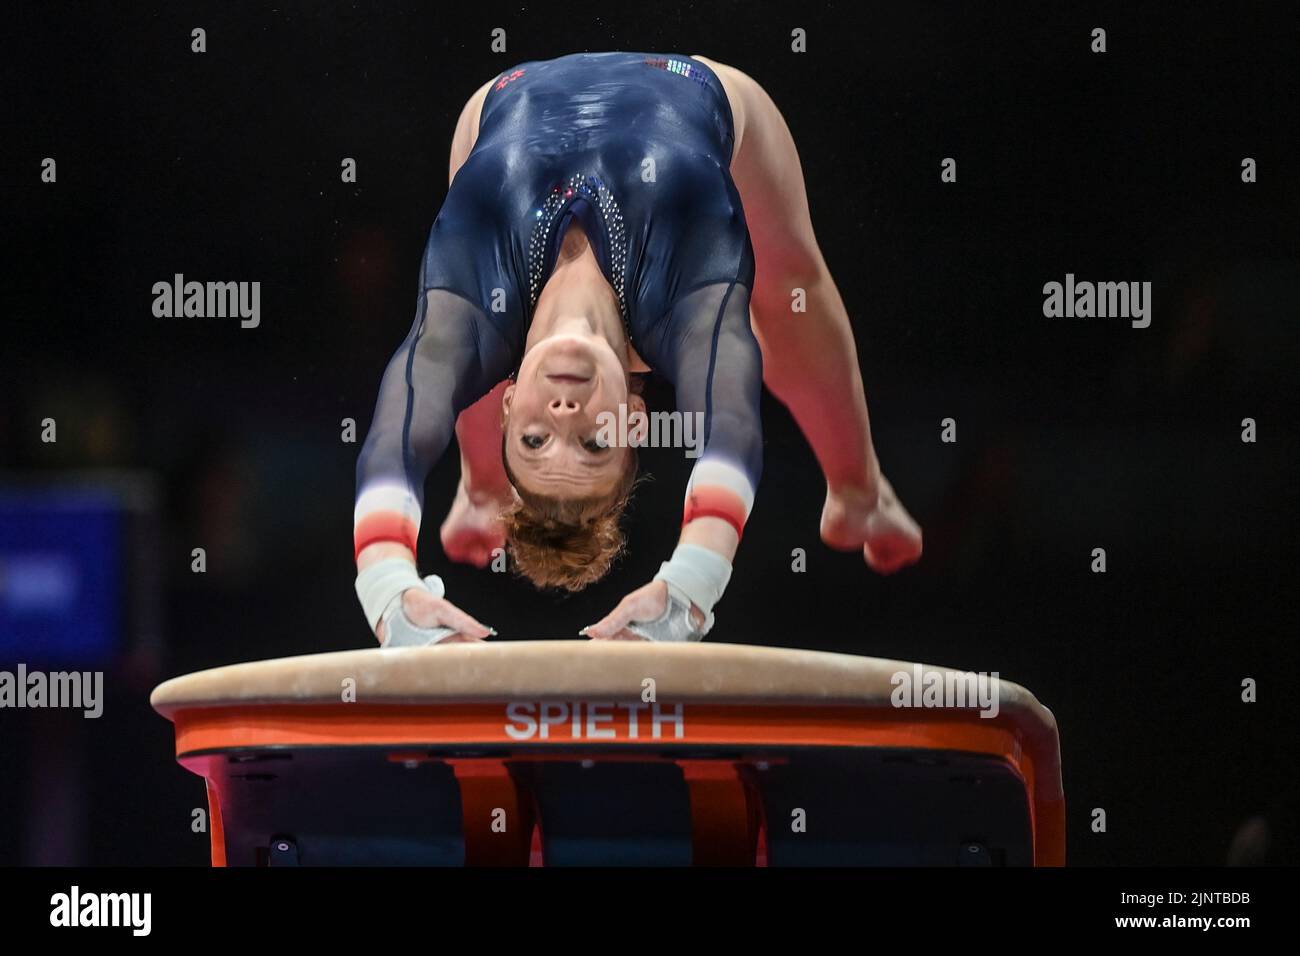 Membre de l'équipe France. Championnats d'Europe Munich 2022 : gymnastique artistique, finale de l'équipe féminine Banque D'Images